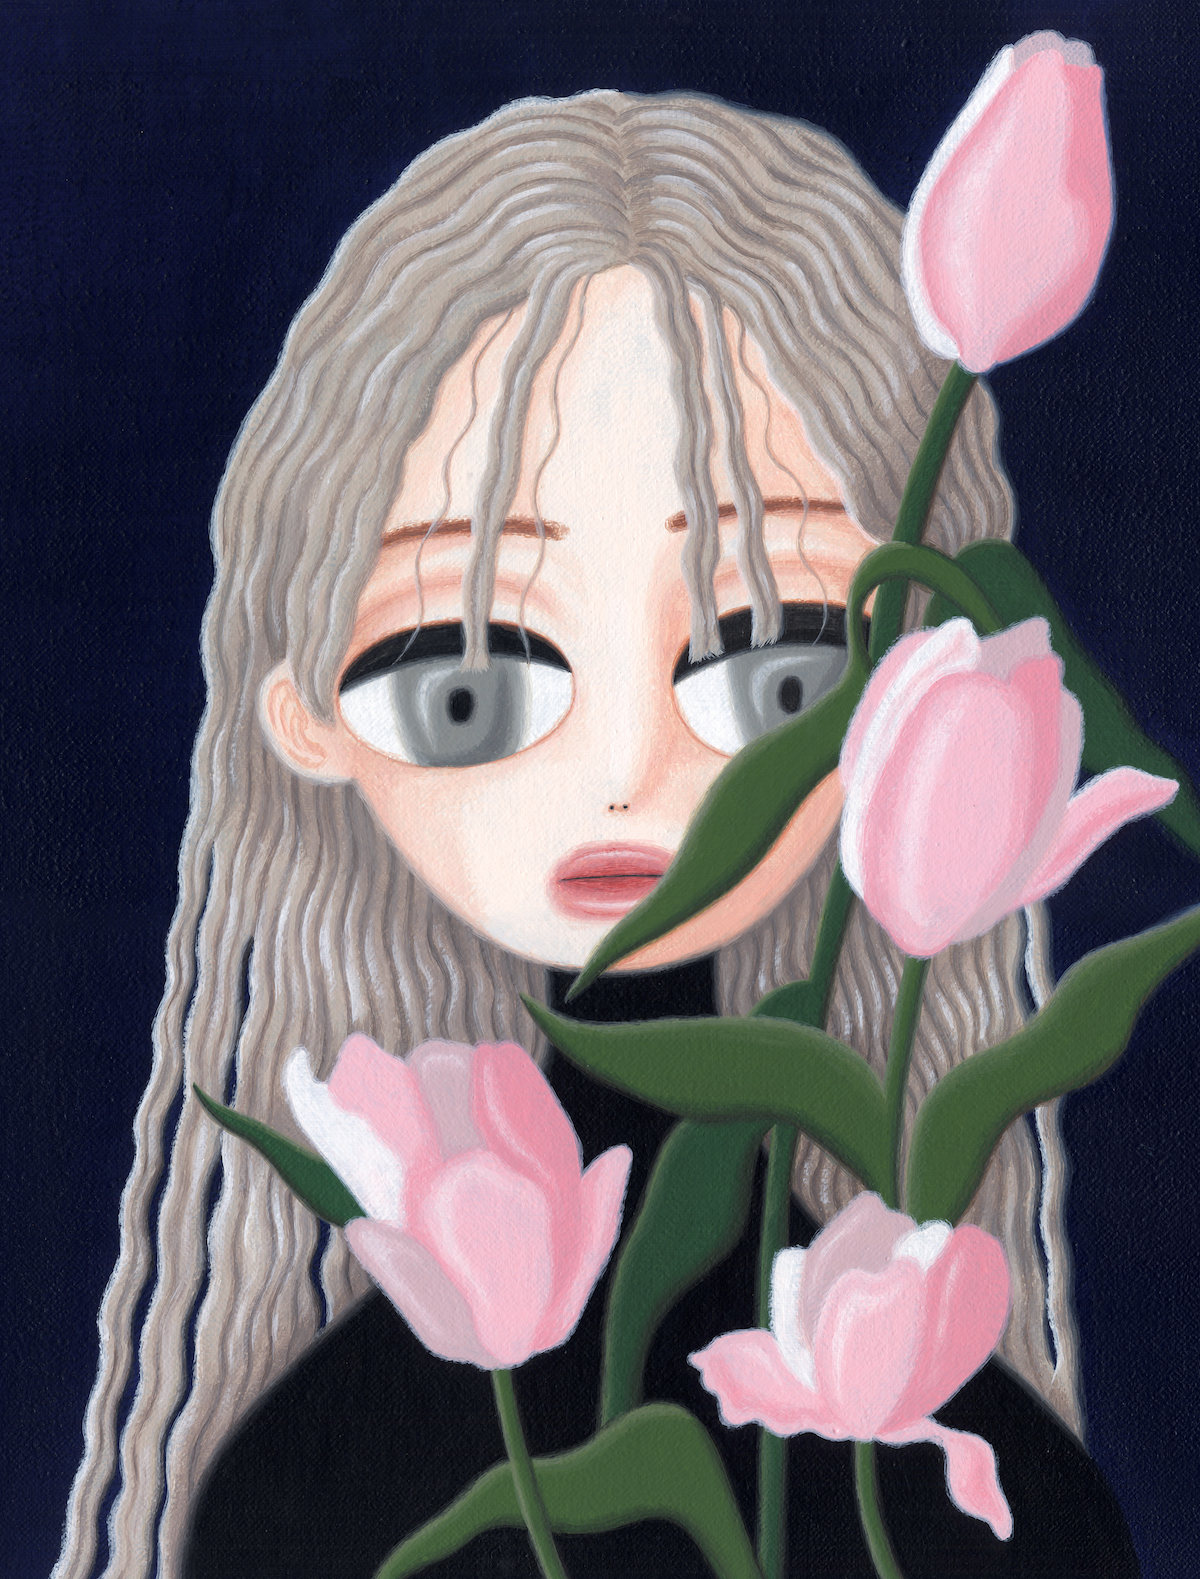 The Wick - Flower (2019) by Sujin Lee